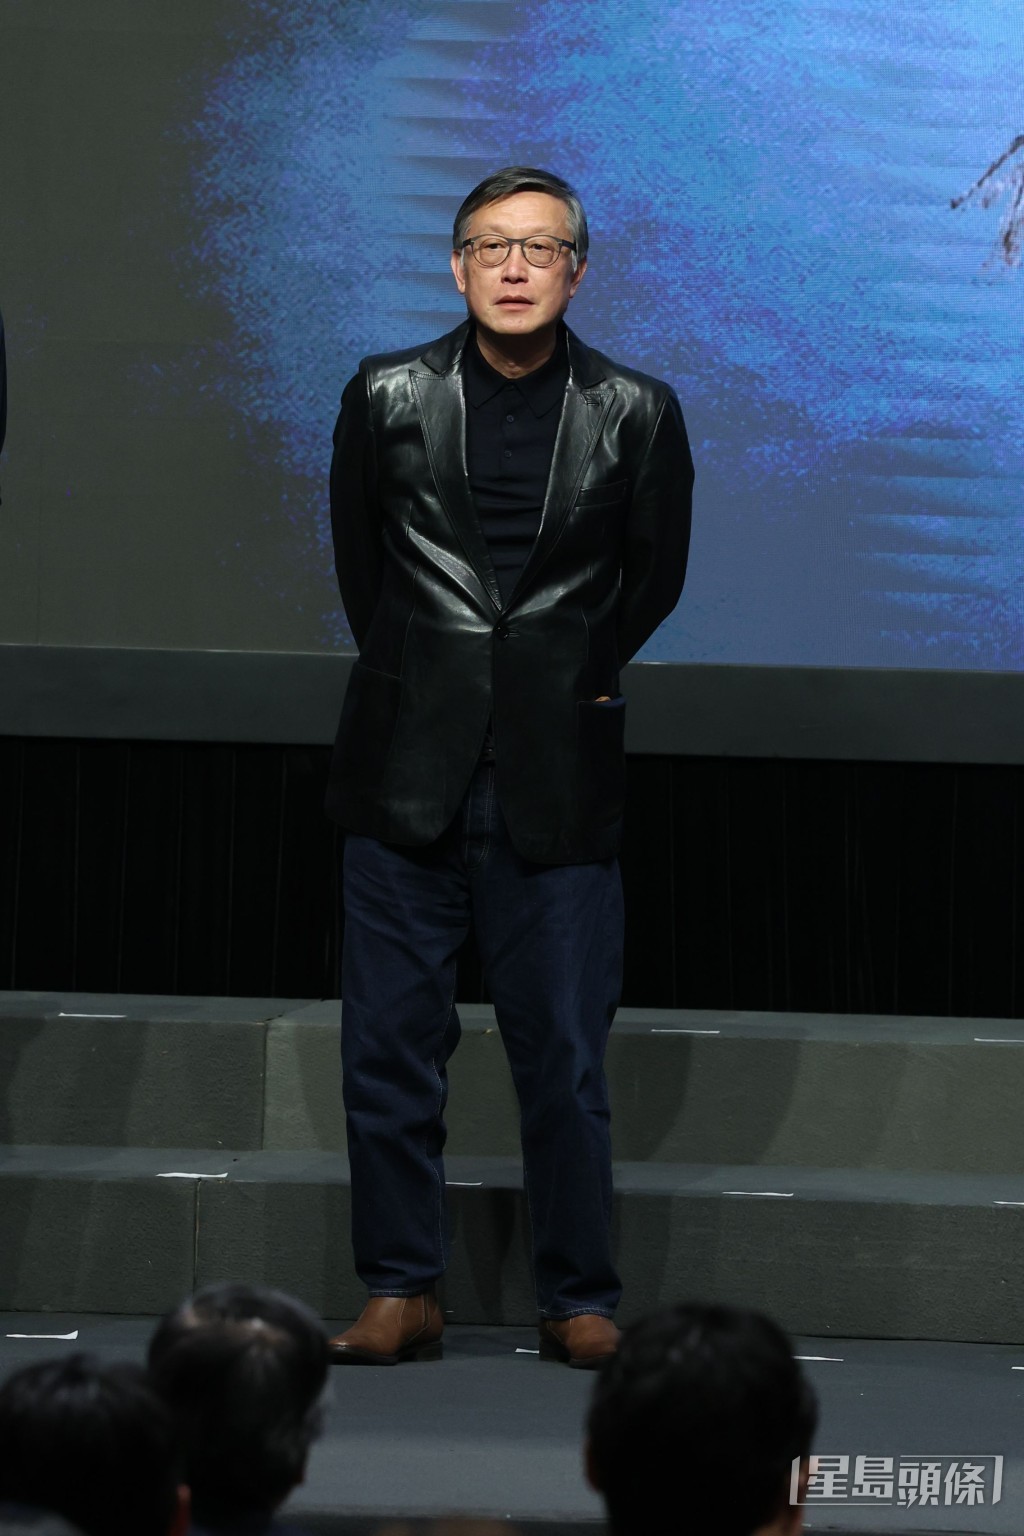 劉偉強為《冒名頂替》擔任監製。